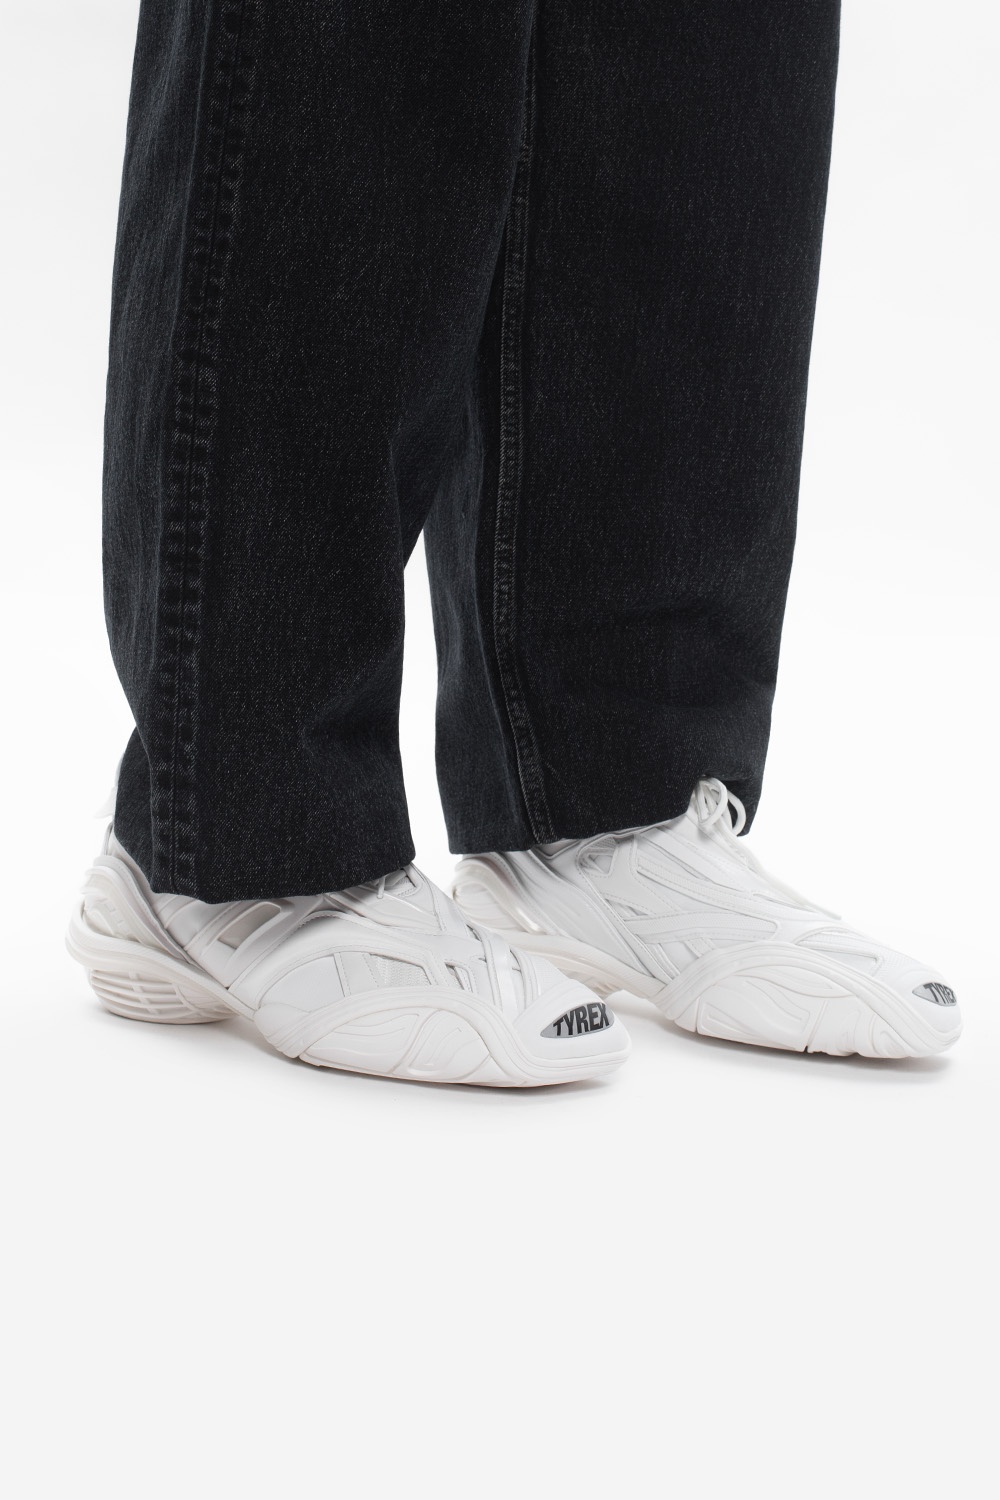 Balenciaga 'Tyrex' sneakers | Men's Shoes | Vitkac